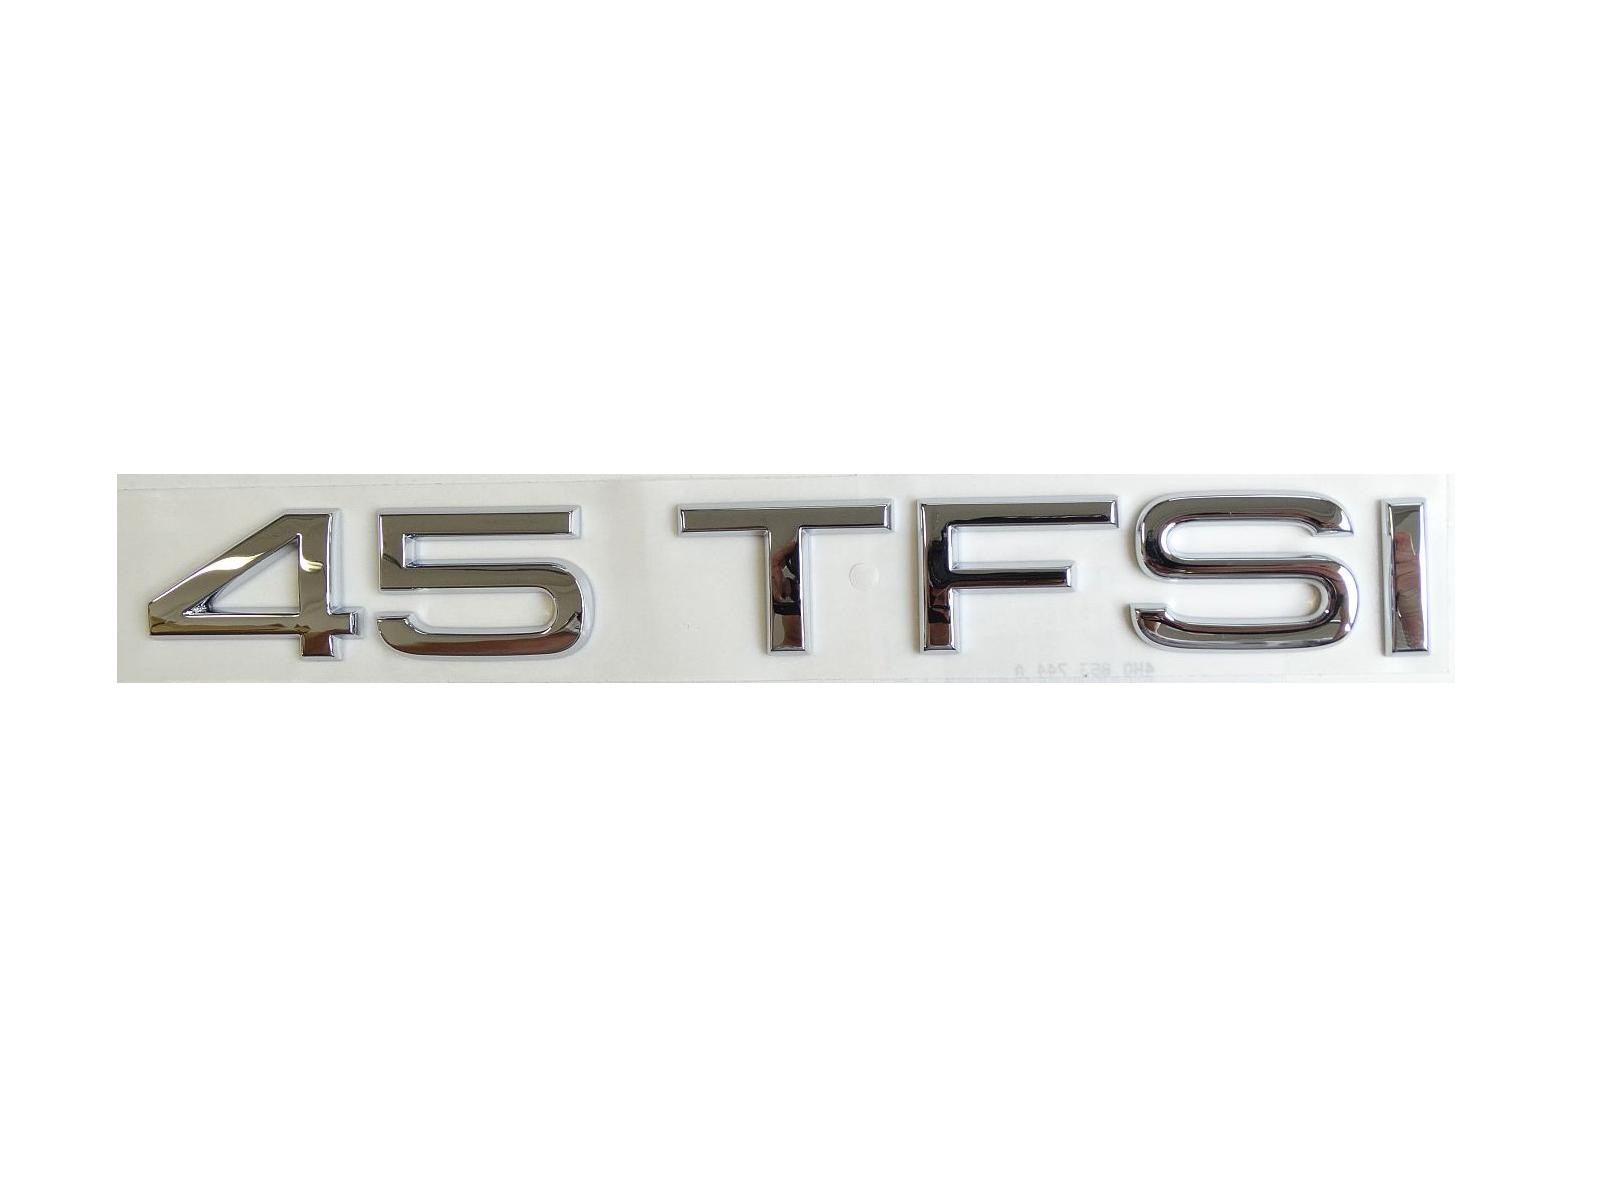 Original Audi 45 TFSI Schriftzug Emblem Logo selbstklebend